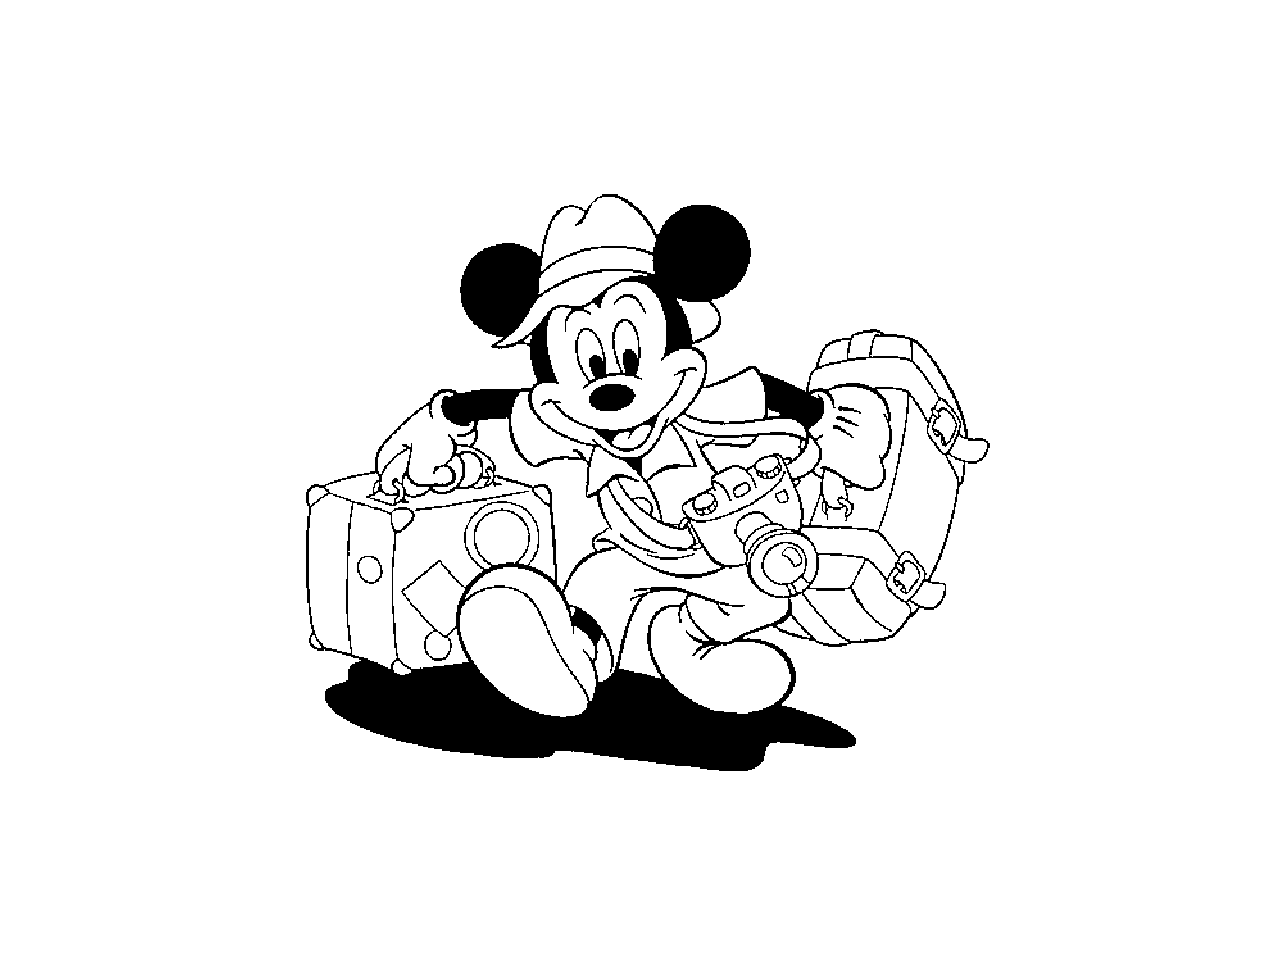 Pronto para umas férias Mickey?